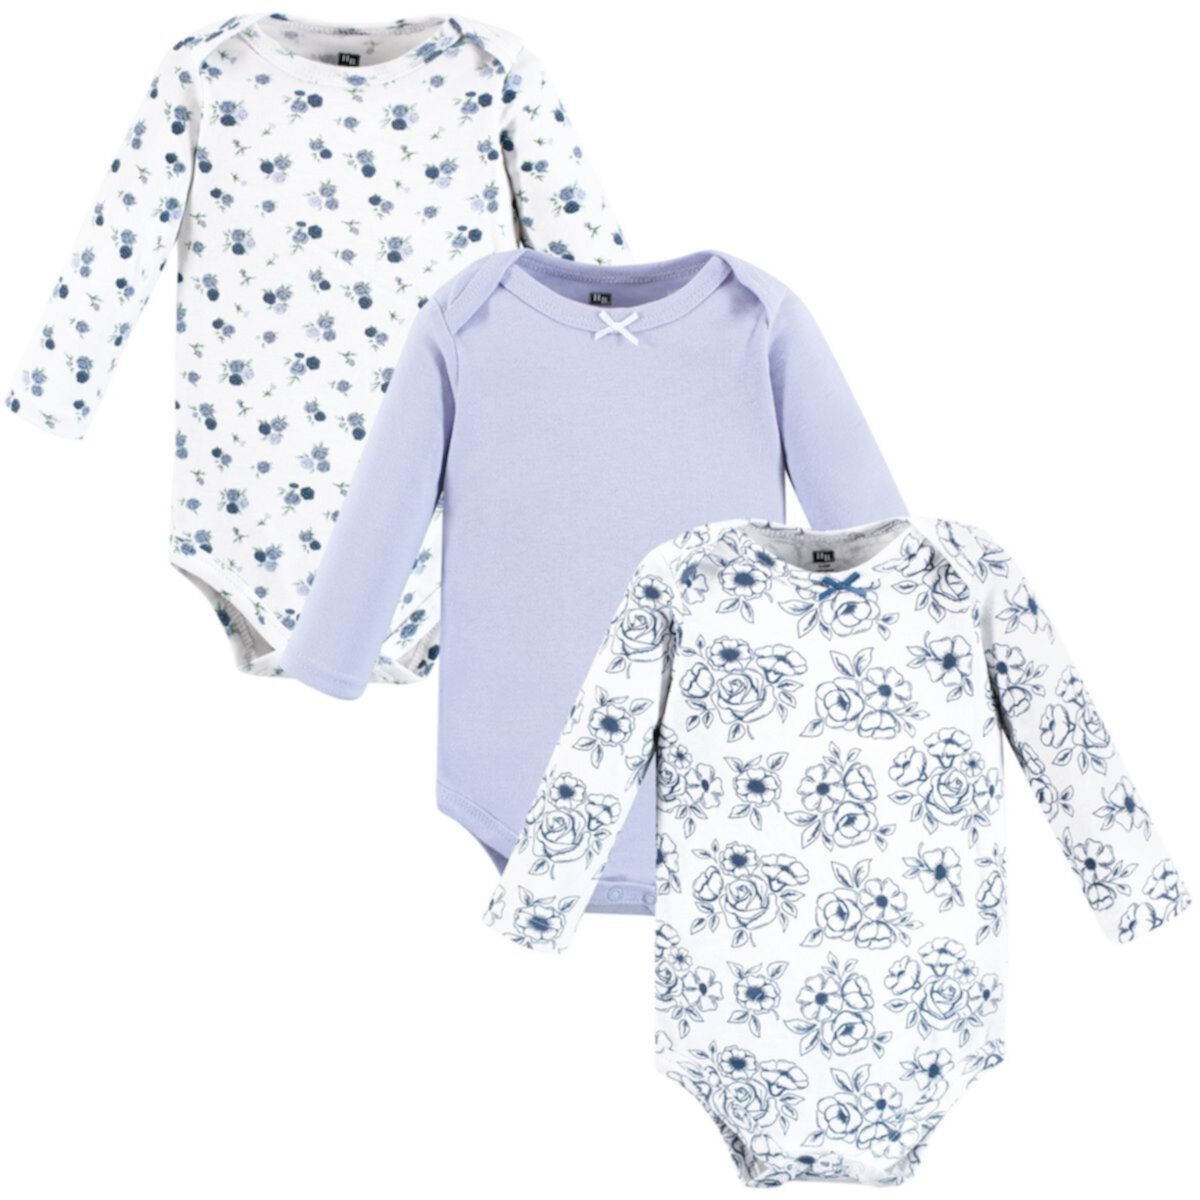 Детские комплекты одежды Hudson Baby для девочек, хлопковые боди с длинным рукавом, комплект из 3 штук, цвет синий Hudson Baby